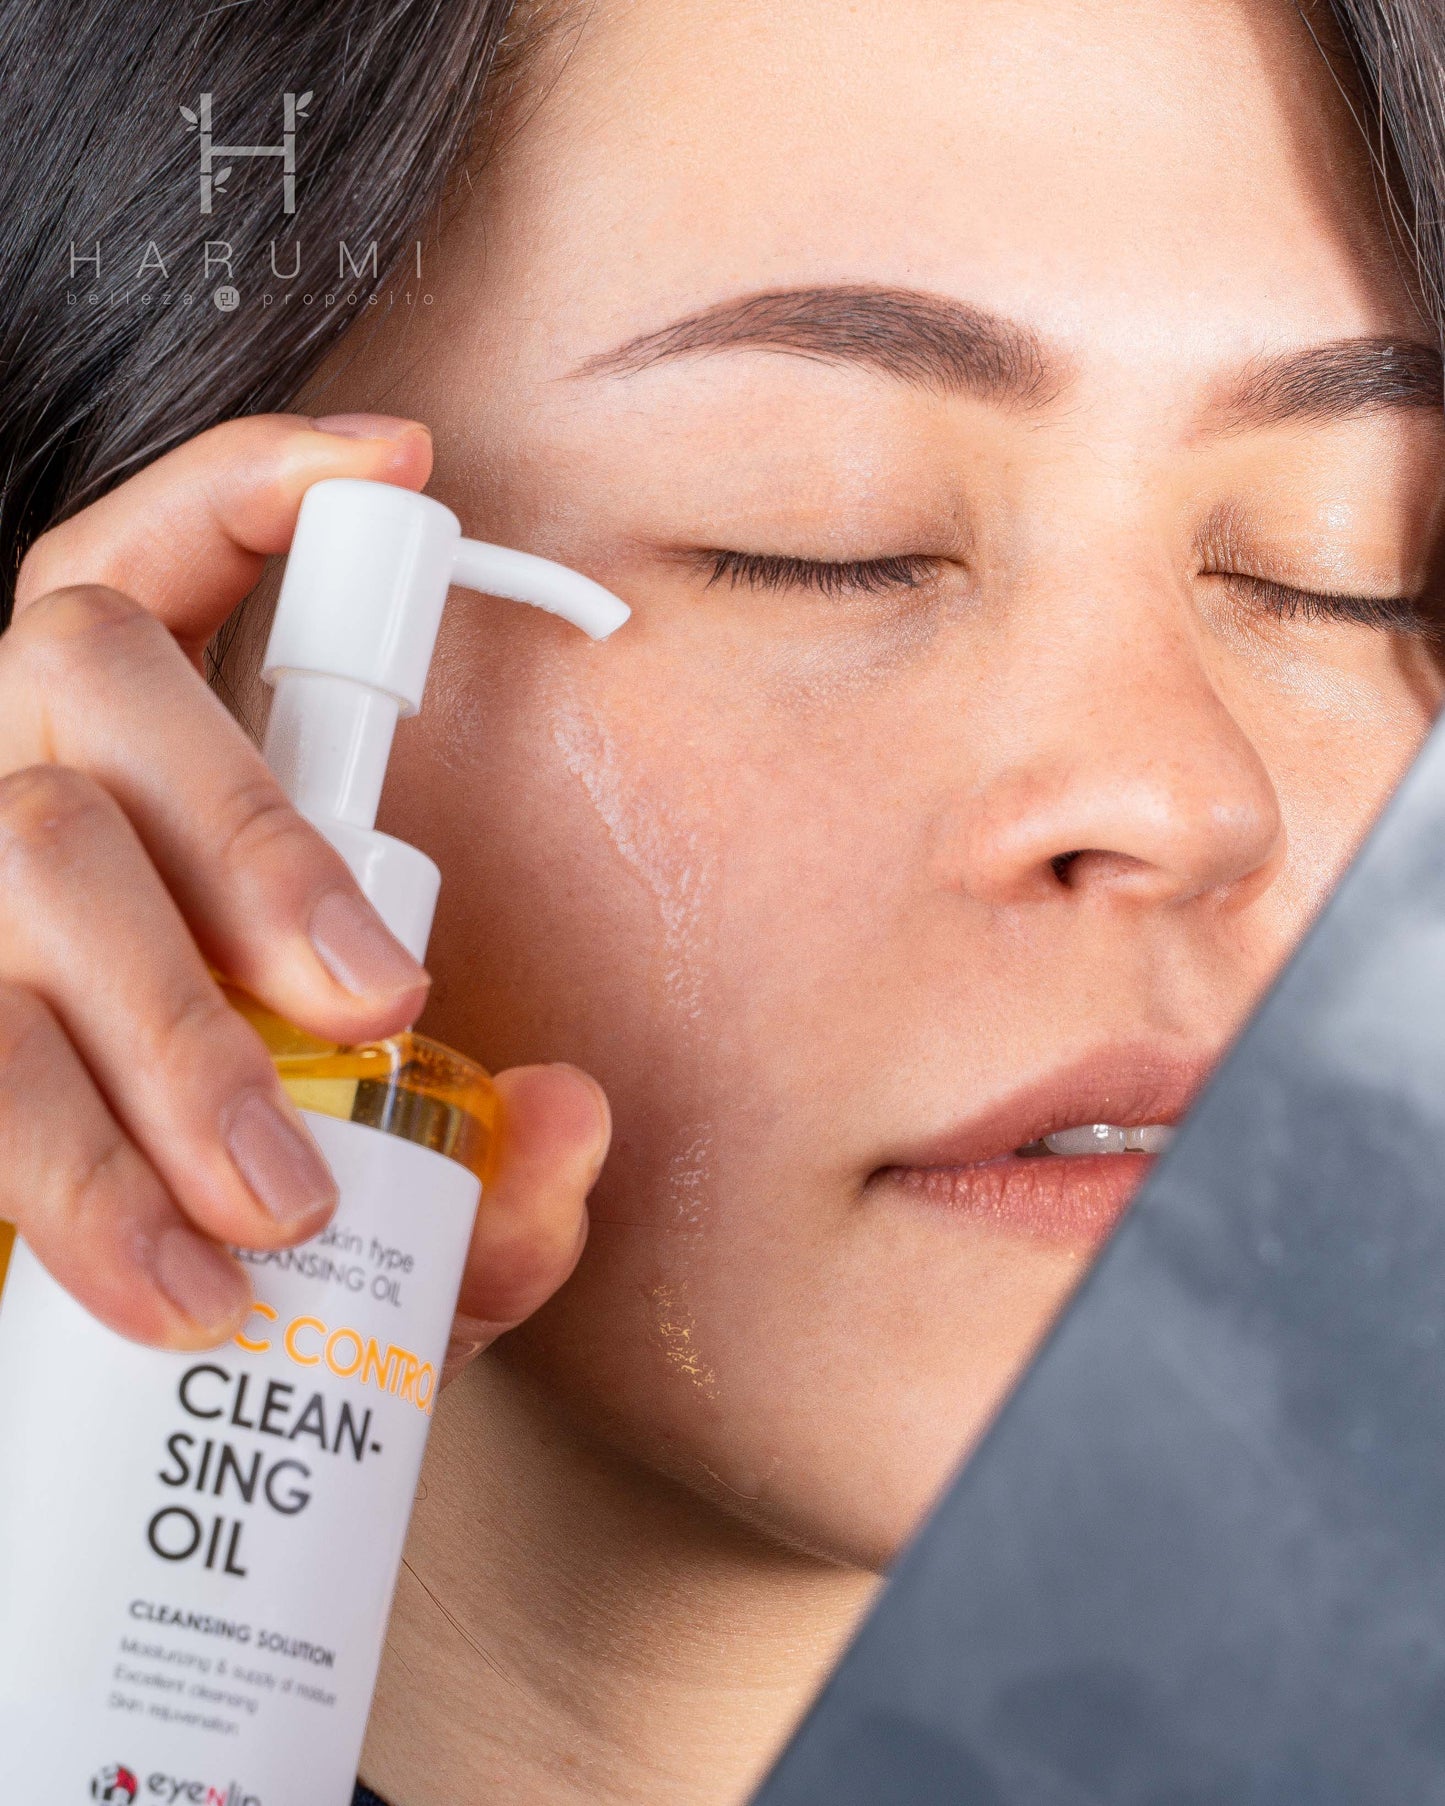 Eyenlip Vc Control Cleansing Oil Skincare maquillaje productos de belleza coreanos en Colombia kbeauty